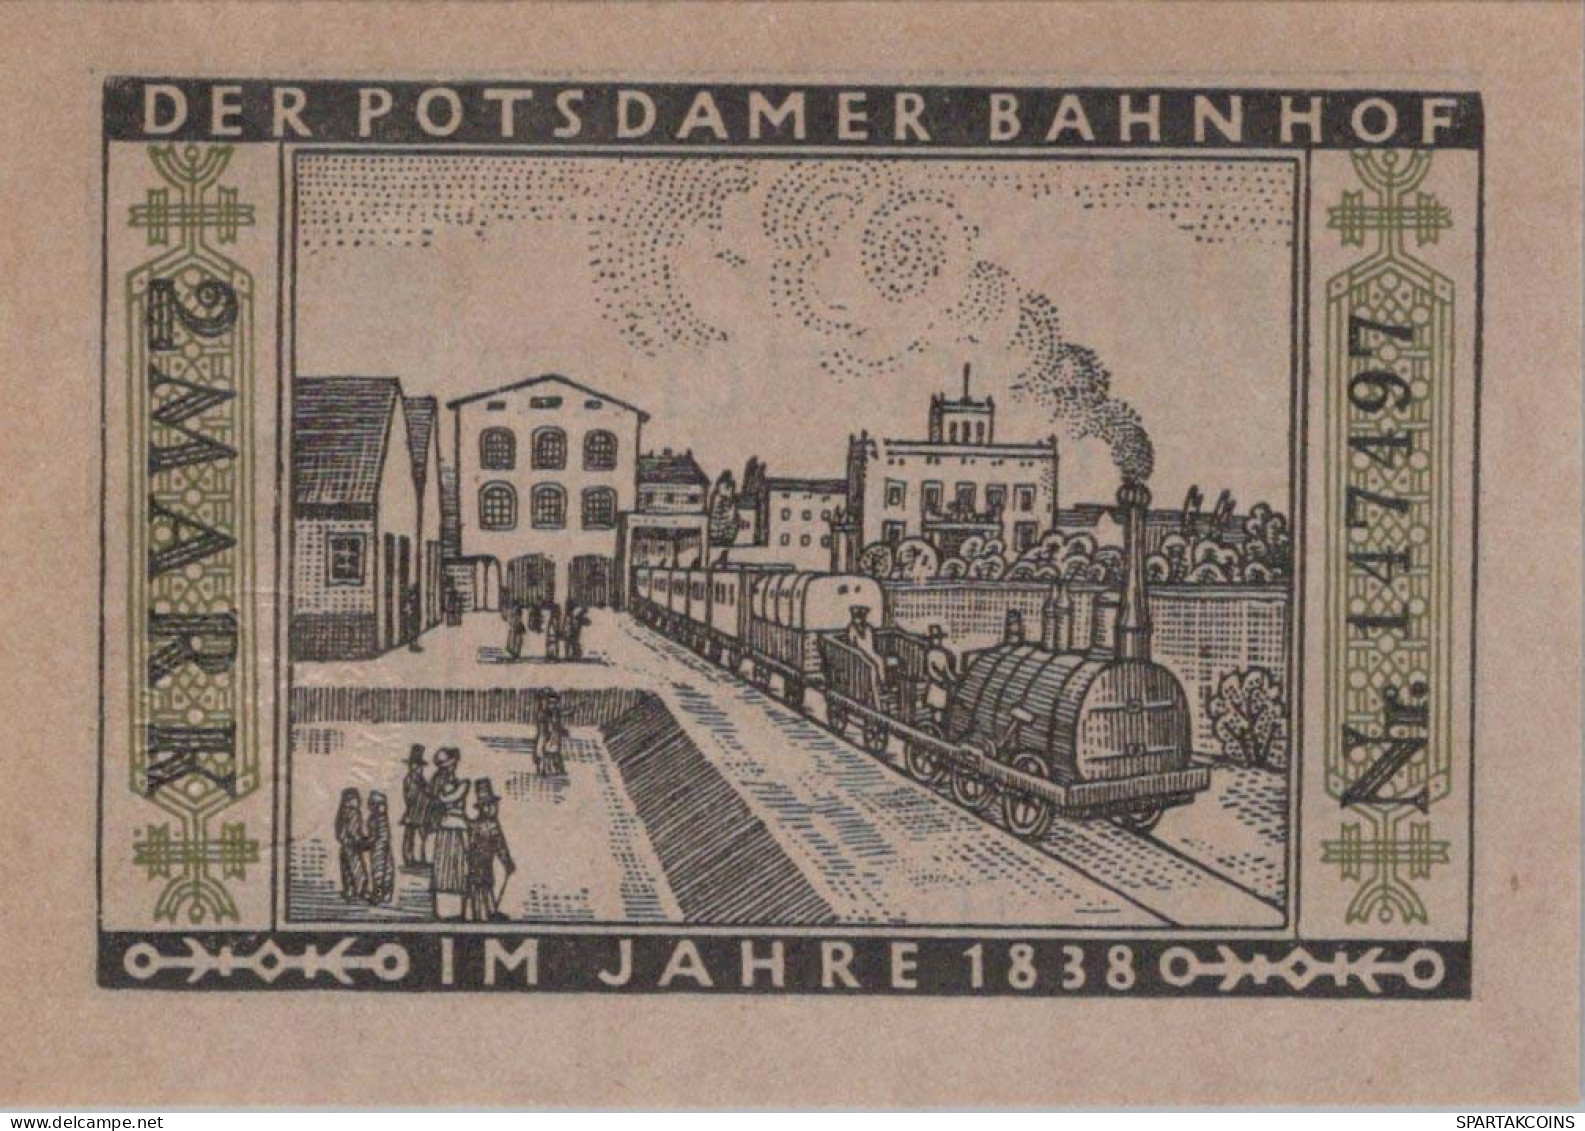 2 MARK 1922 Stadt BERLIN DEUTSCHLAND Notgeld Papiergeld Banknote #PF809 - [11] Local Banknote Issues